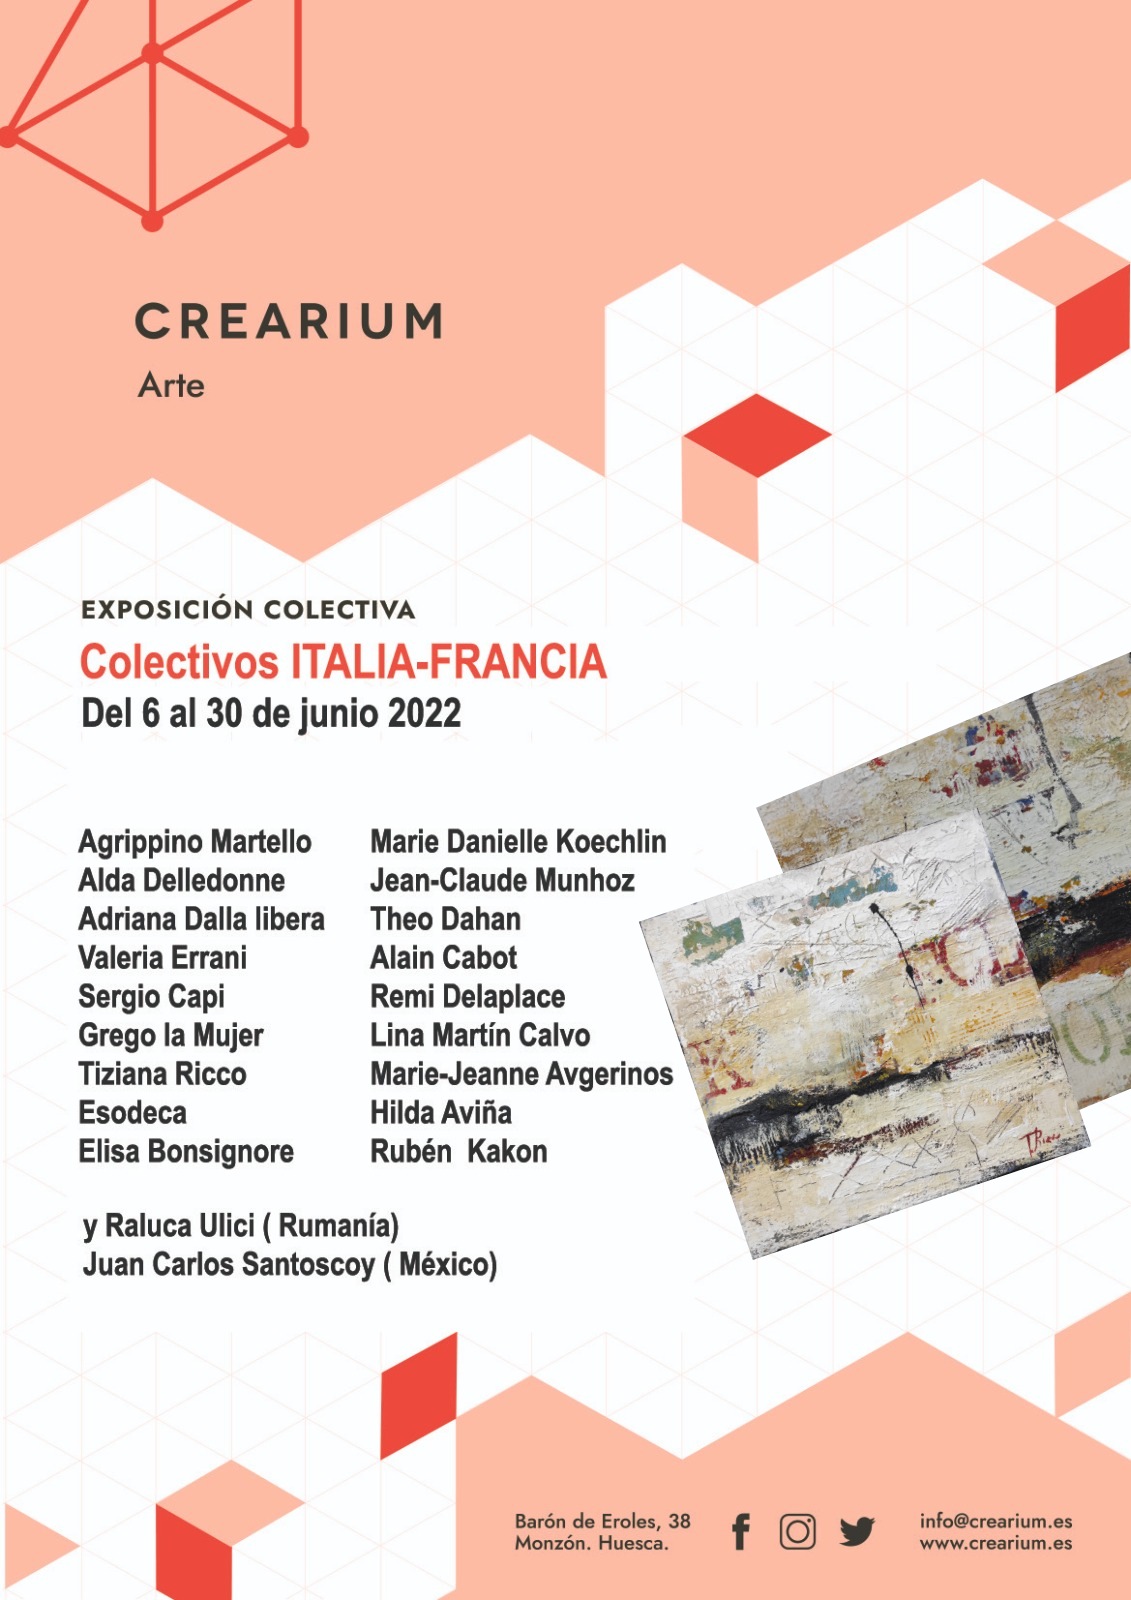 Scopri di più sull'articolo Mostra d’Arte Contemporanea Galleria Crearium en Monzon Huesca di Gorgonio SanJuan dal 6 al 30 Giugno